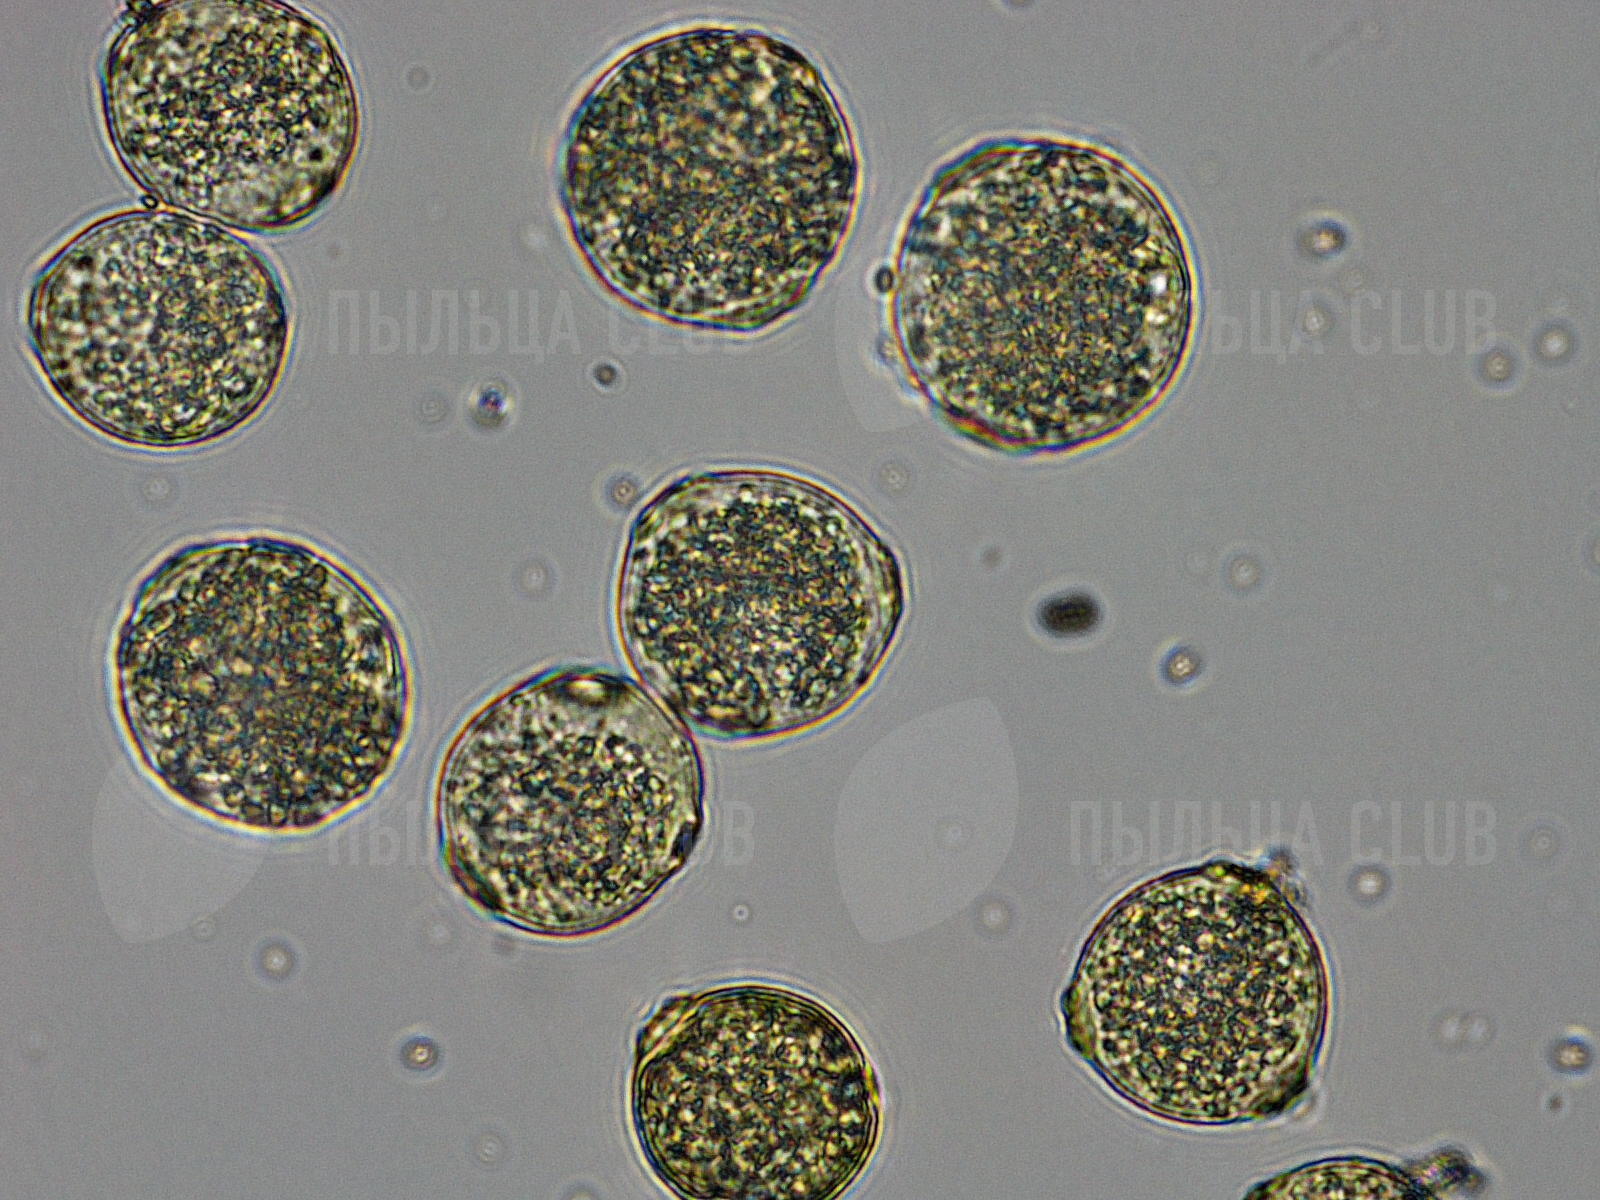 Пыльца березы микроскопом. Пыльцевые зерна амброзии. Пыльца амброзии под микроскопом. Пыльца берёзы микроскопия. Пыльцо